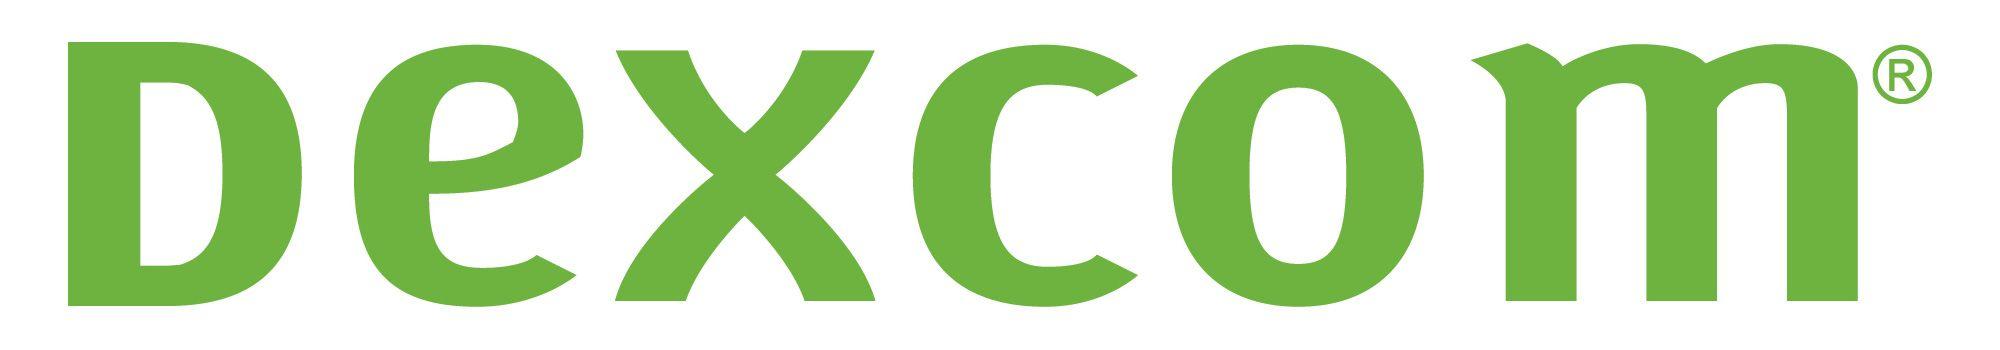 Dexcom Logo - Official Images, Company Logos, & Media Assets | Dexcom